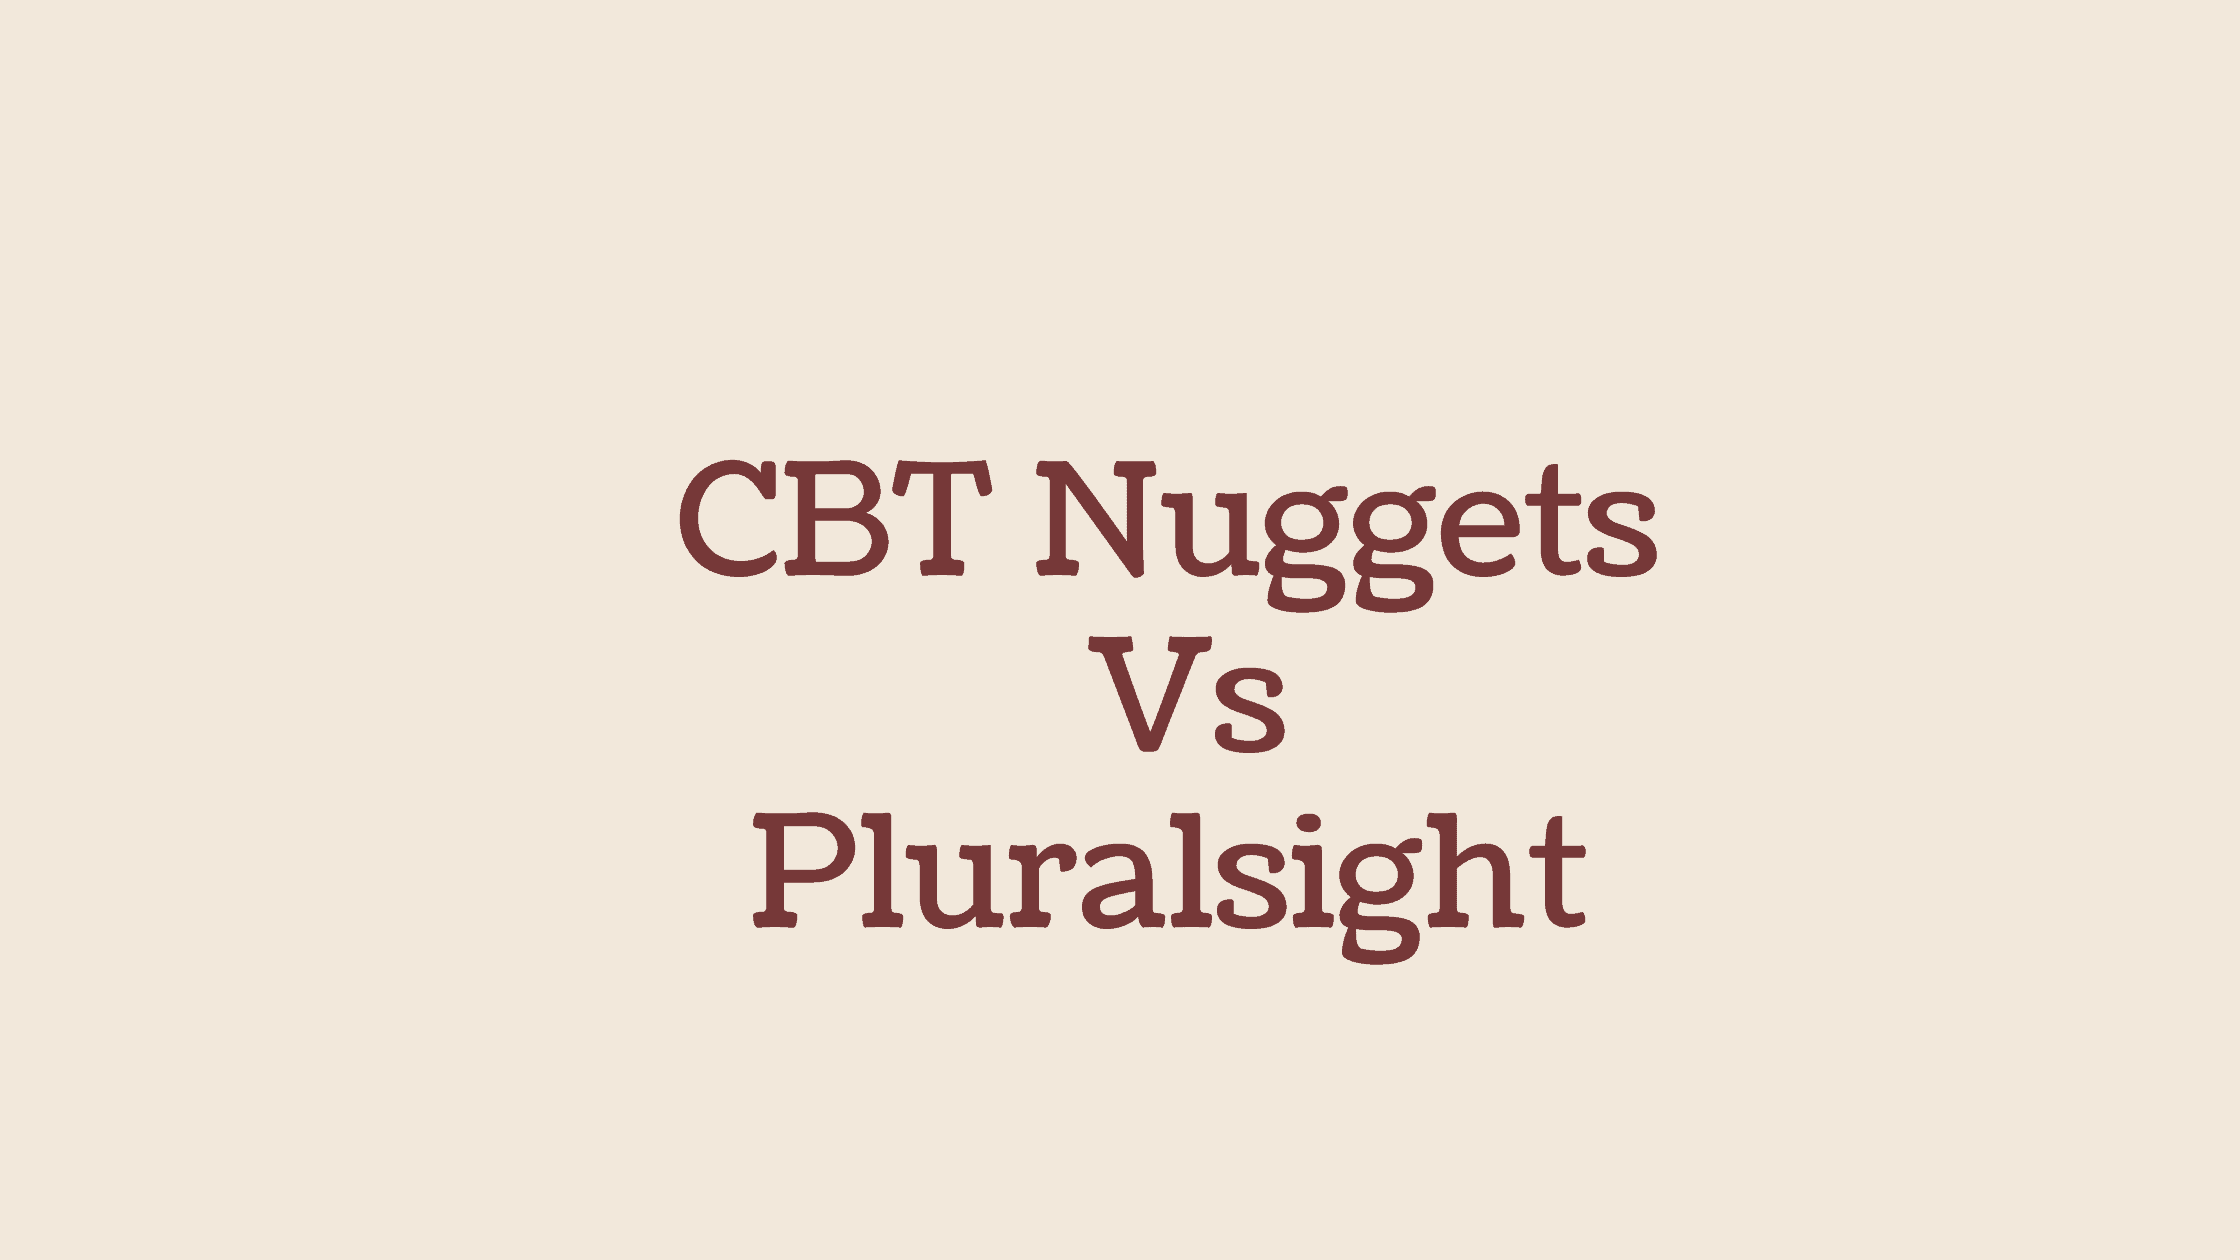 ccna udemy vs cbt nuggets vs pluralsight